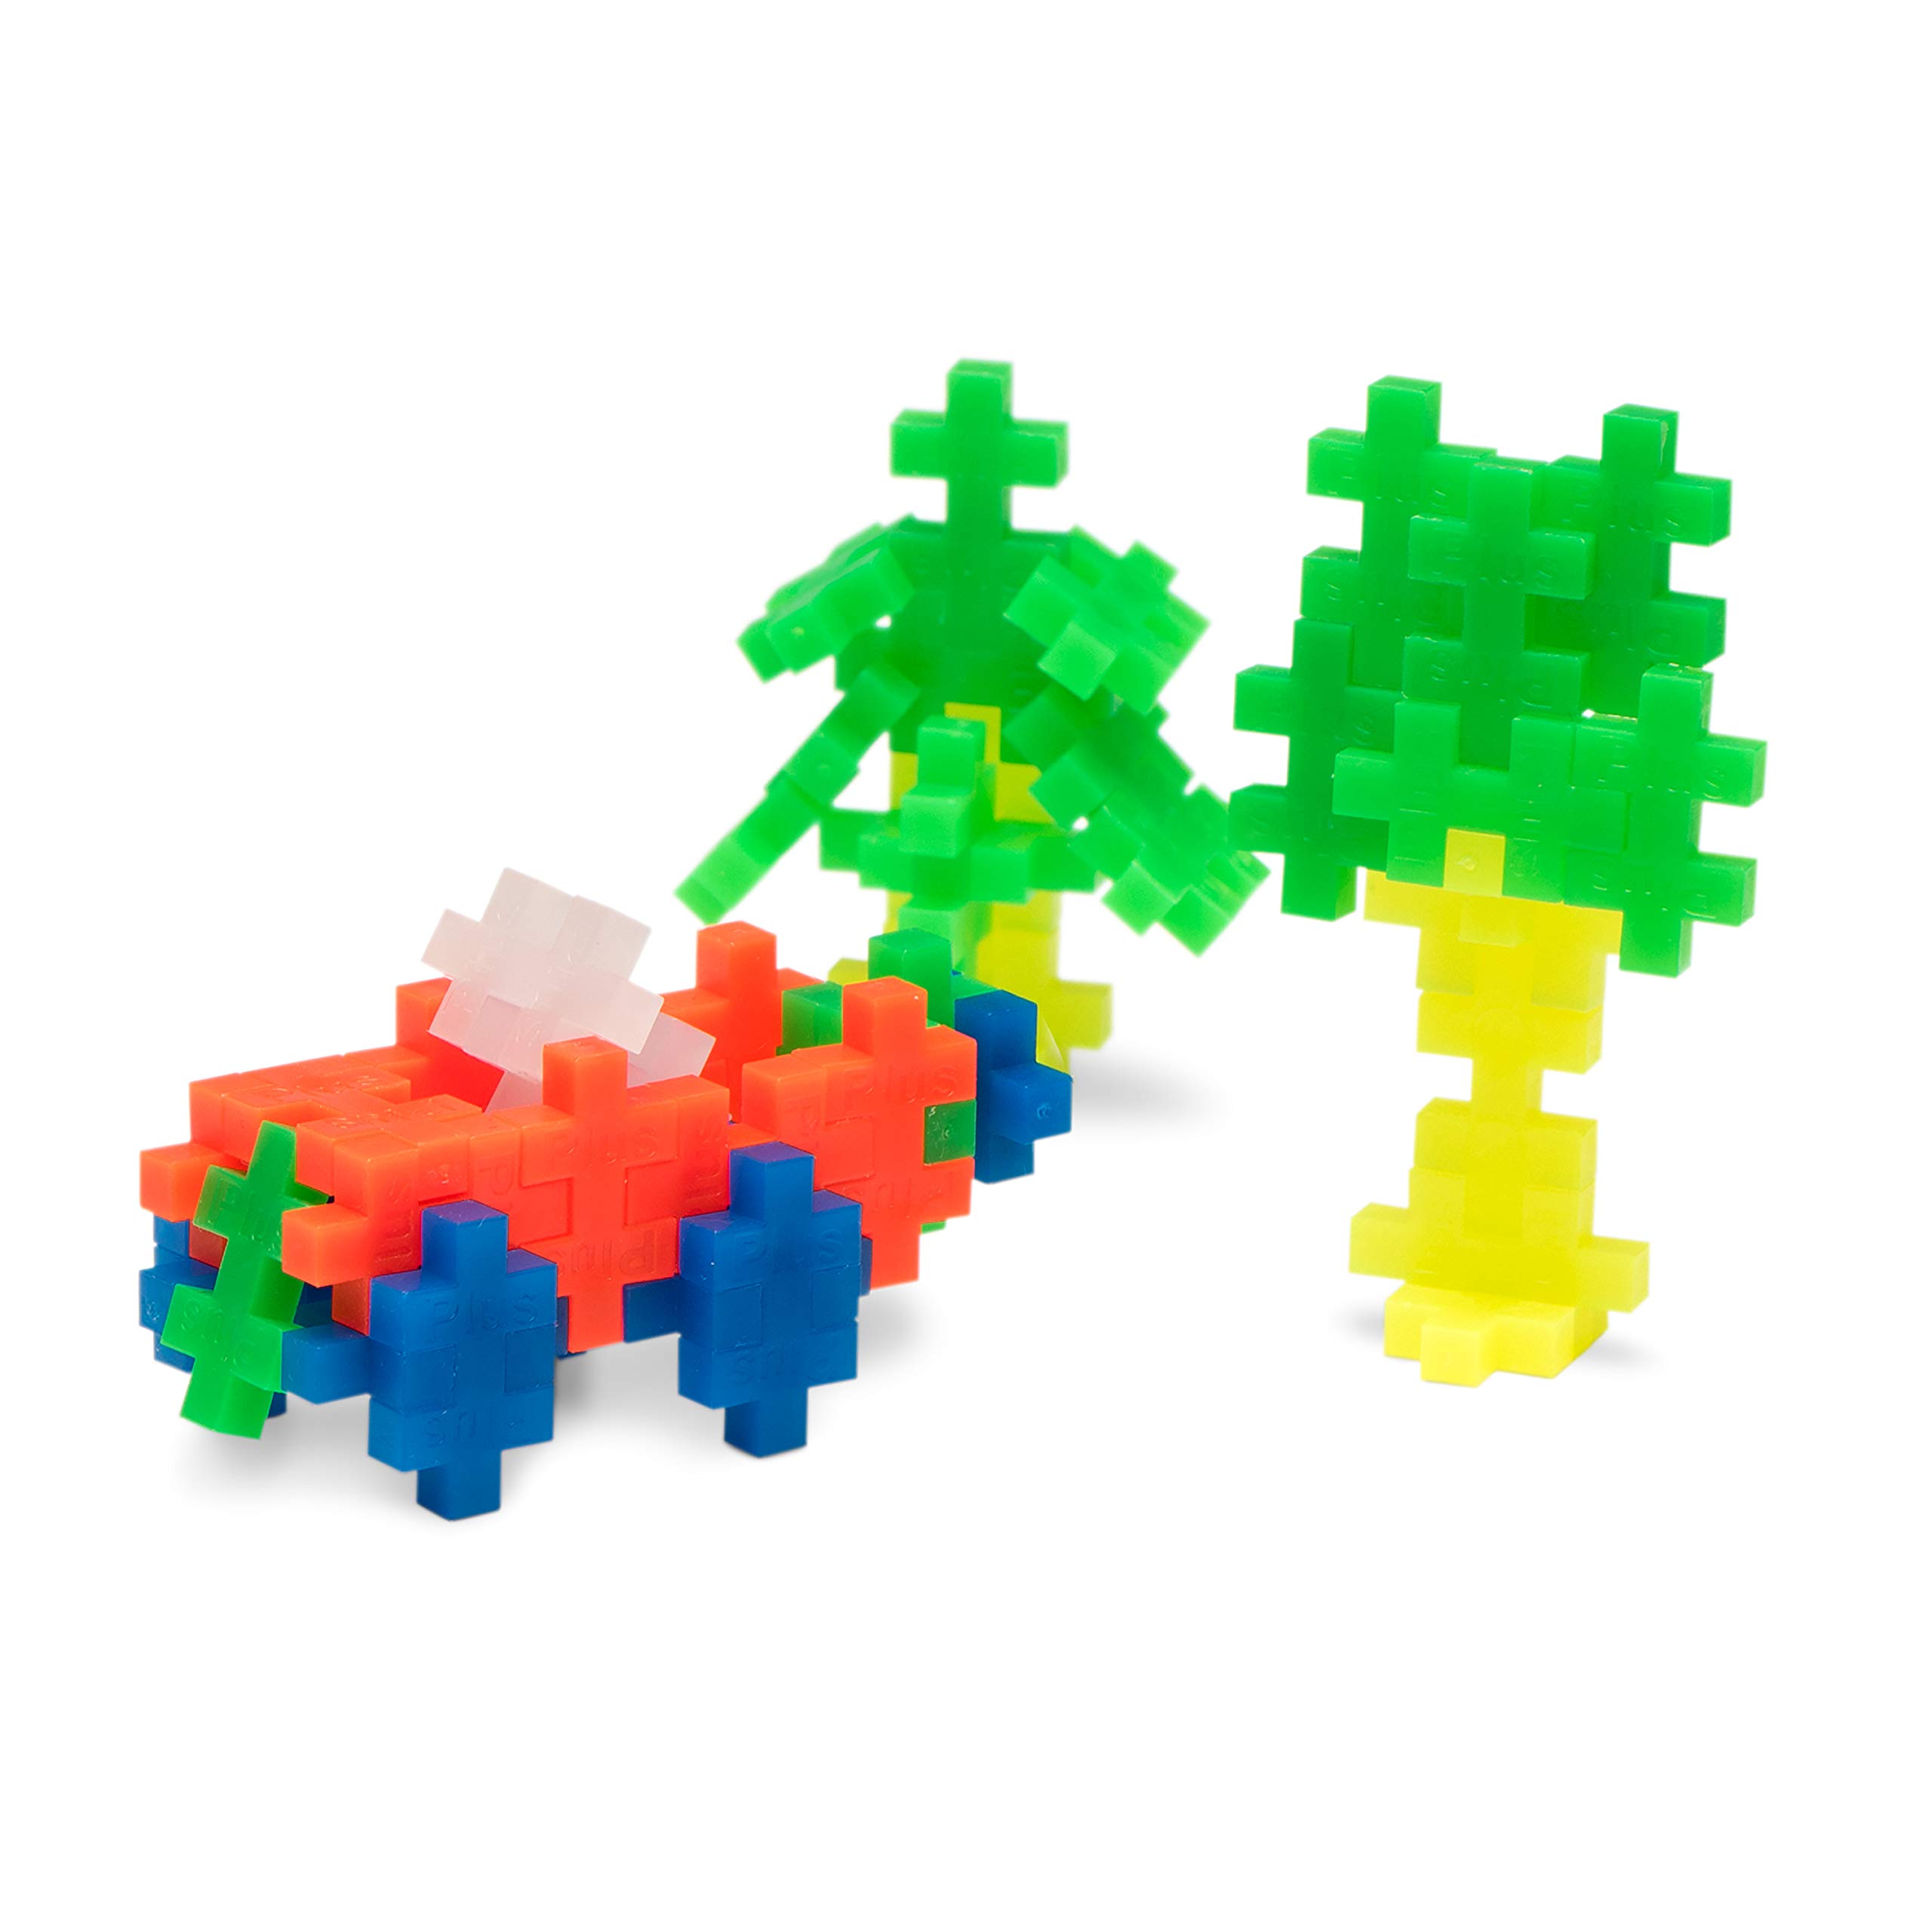 PLUS PLUS – Neon Mix - 300 Piece, Construction Building Stem/Steam Toy, Mini Puzzle Blocks for Kids